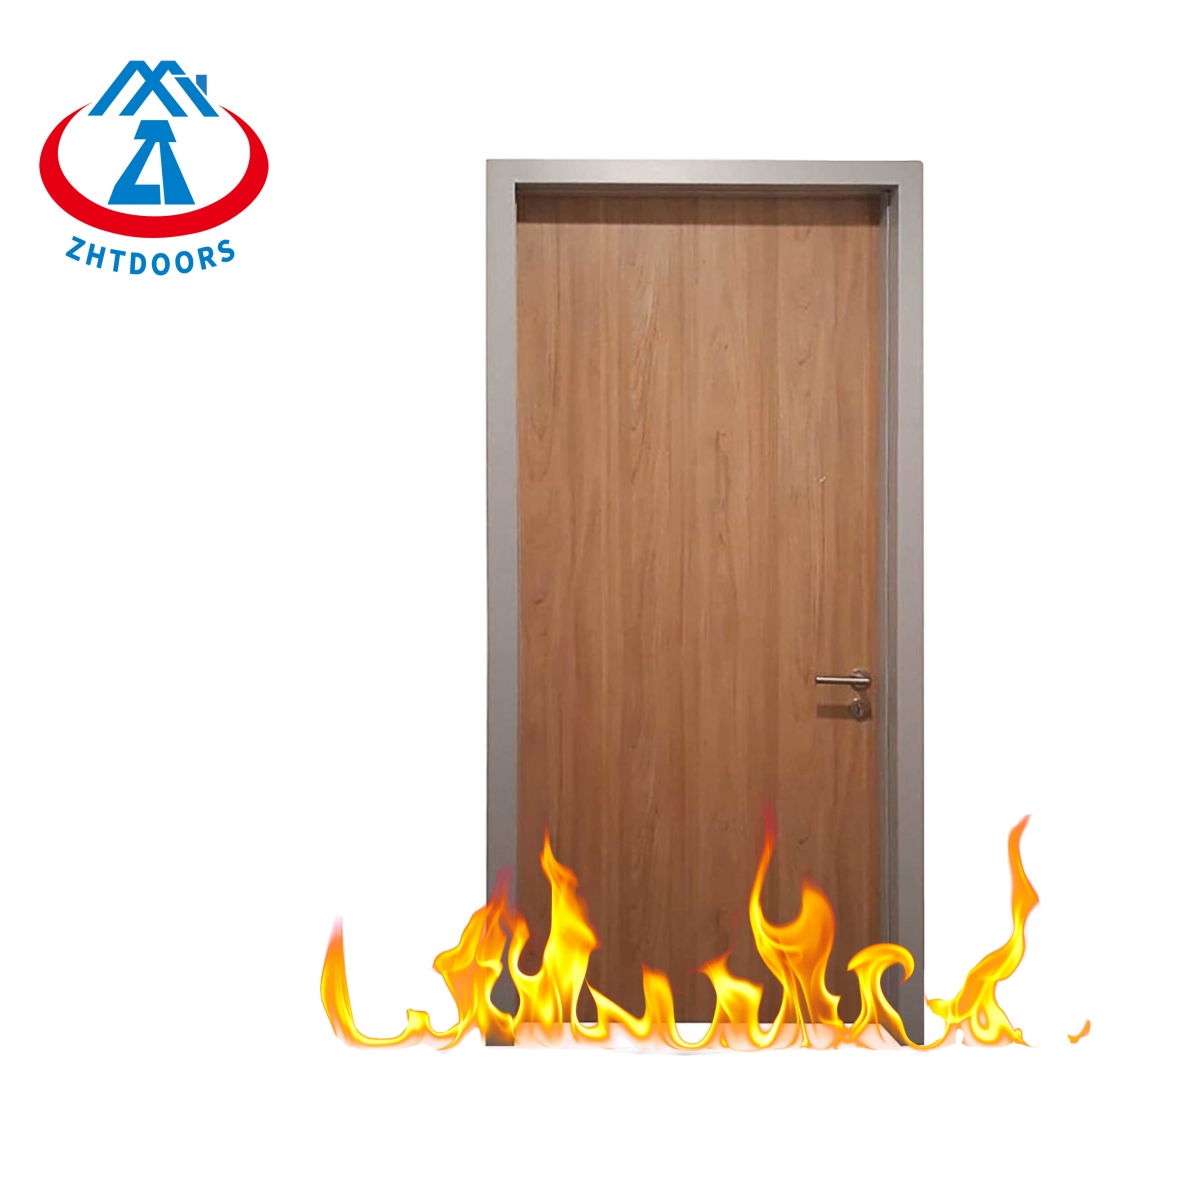 Interior Doors Fire Doors-ZTFIRE Door- Fire Door,Fireproof Door,Fire rated Door,Fire Resistant Door,Steel Door,Metal Door,Exit Door